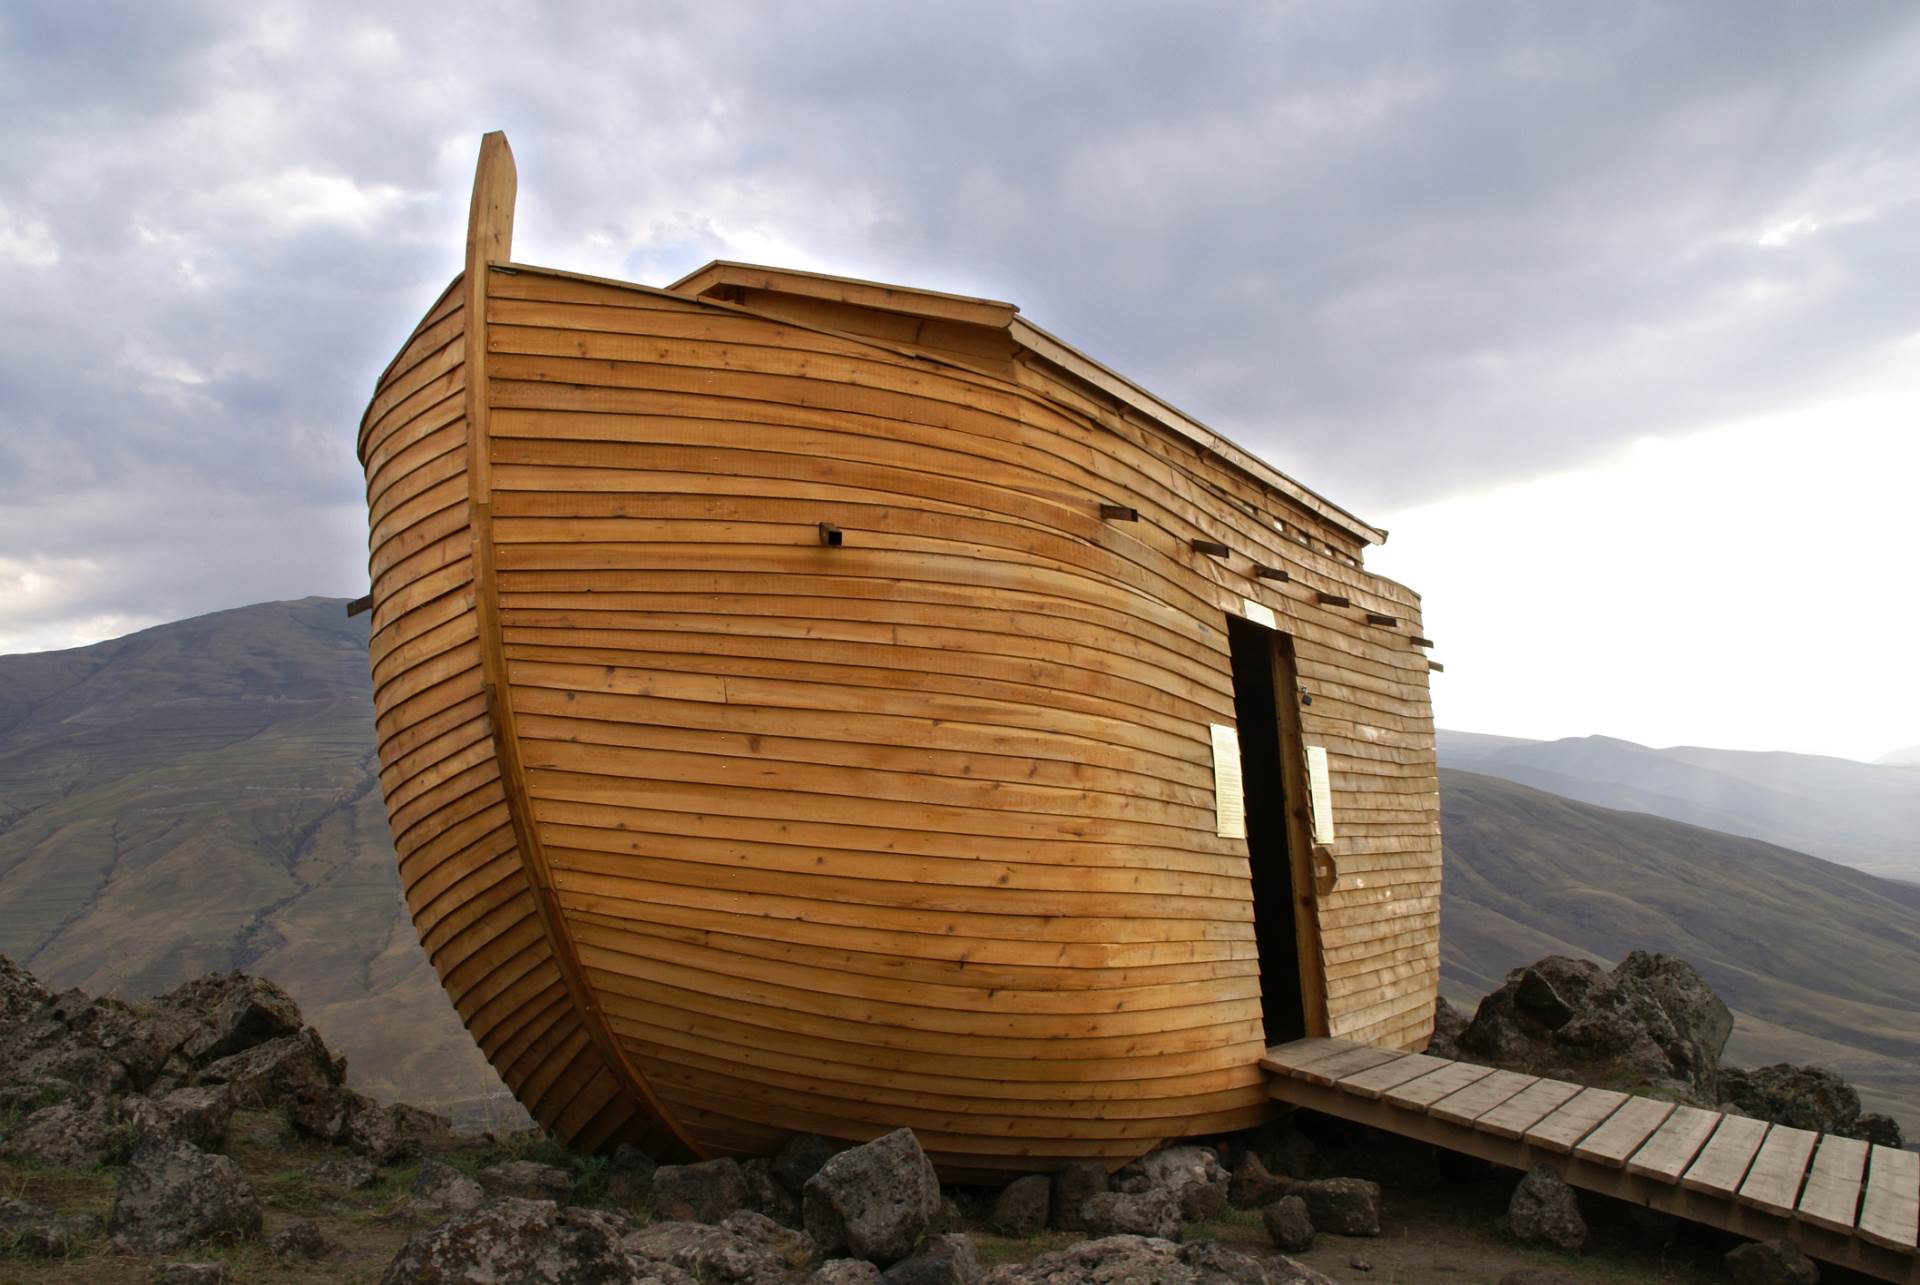  Priča o potopu i Nojevoj barci je zapravo prvi "fejk njuz"? 